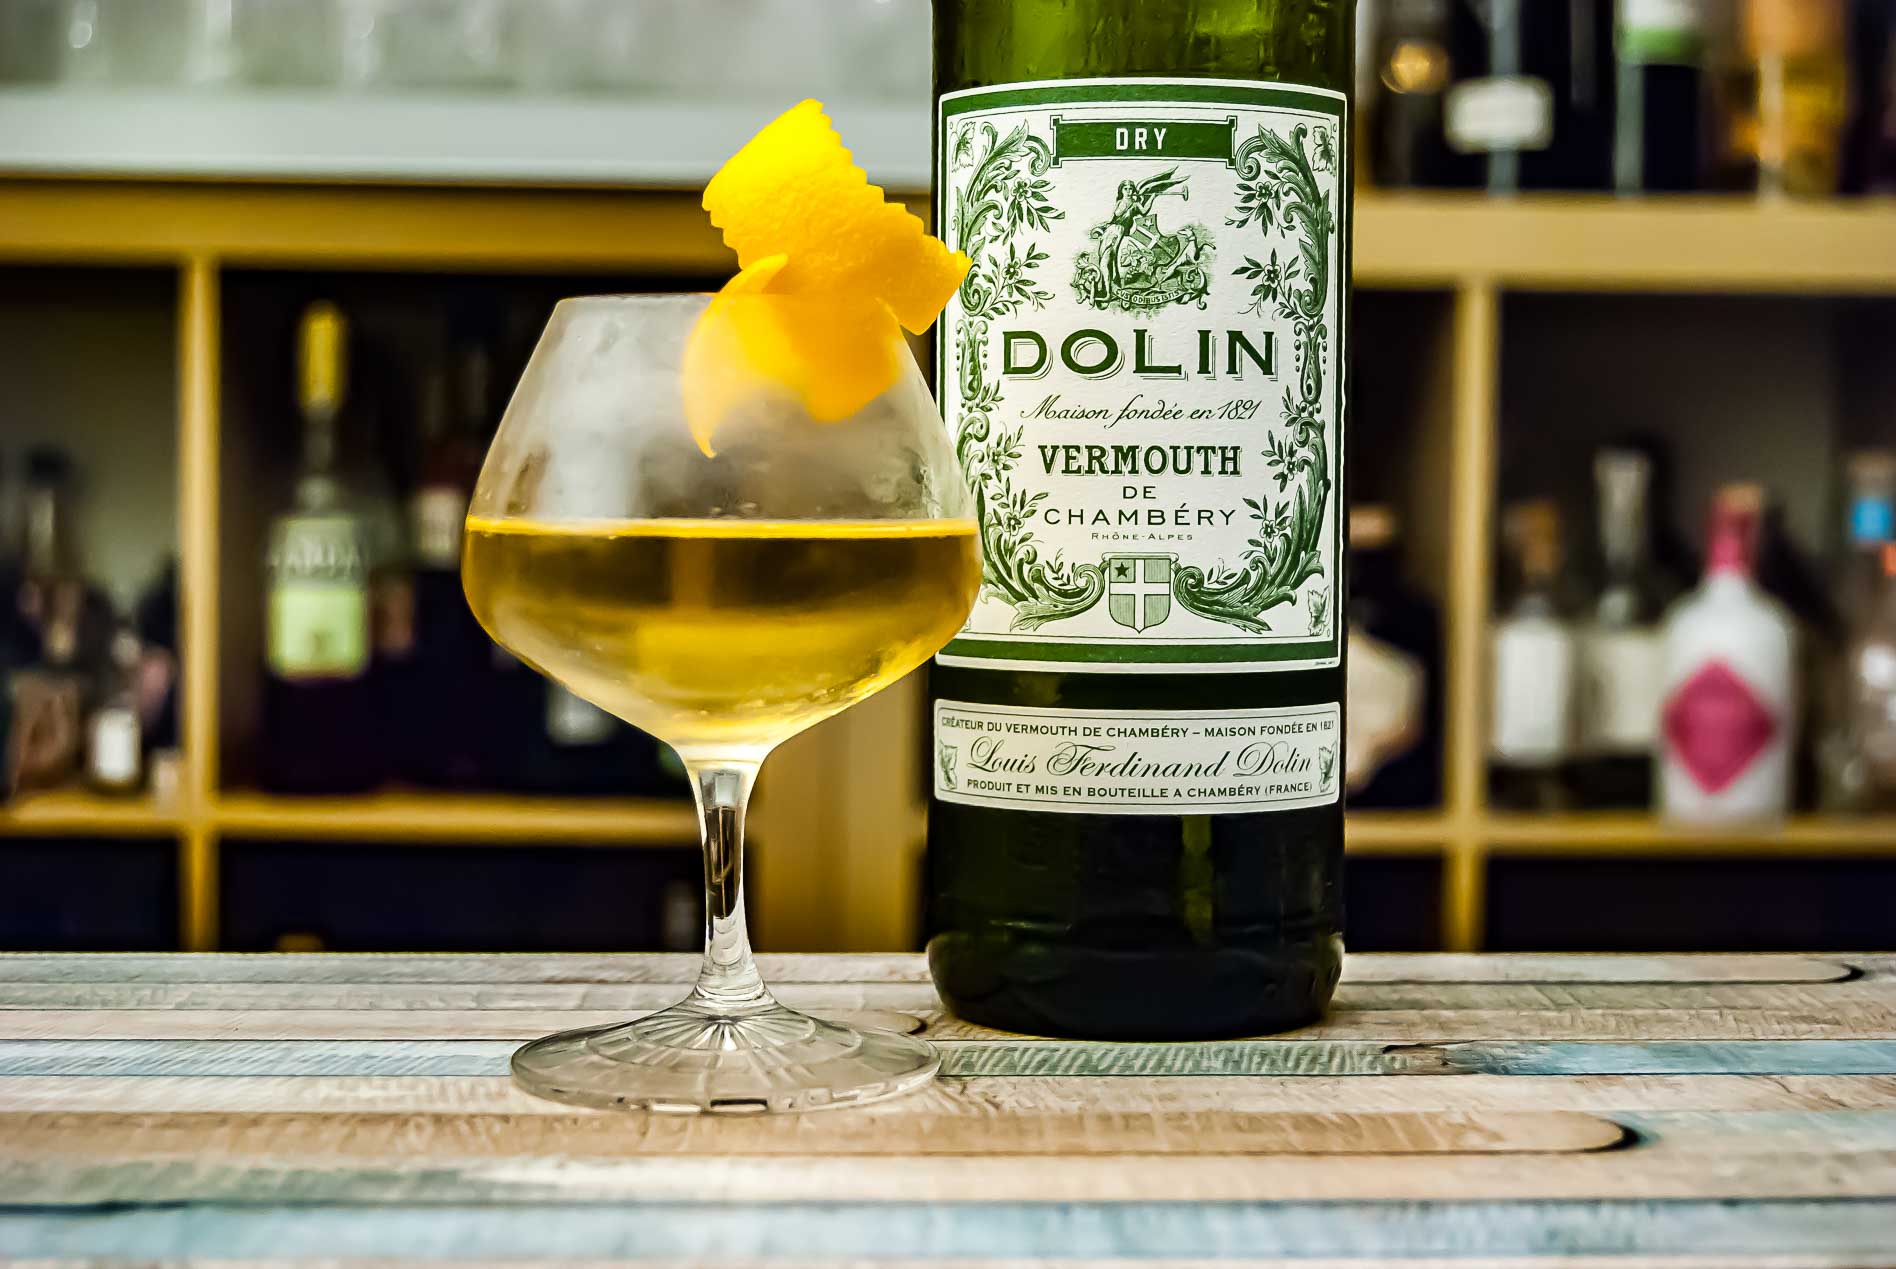 französisch Dolin trocken, Dry und - zu günstig Vermouth